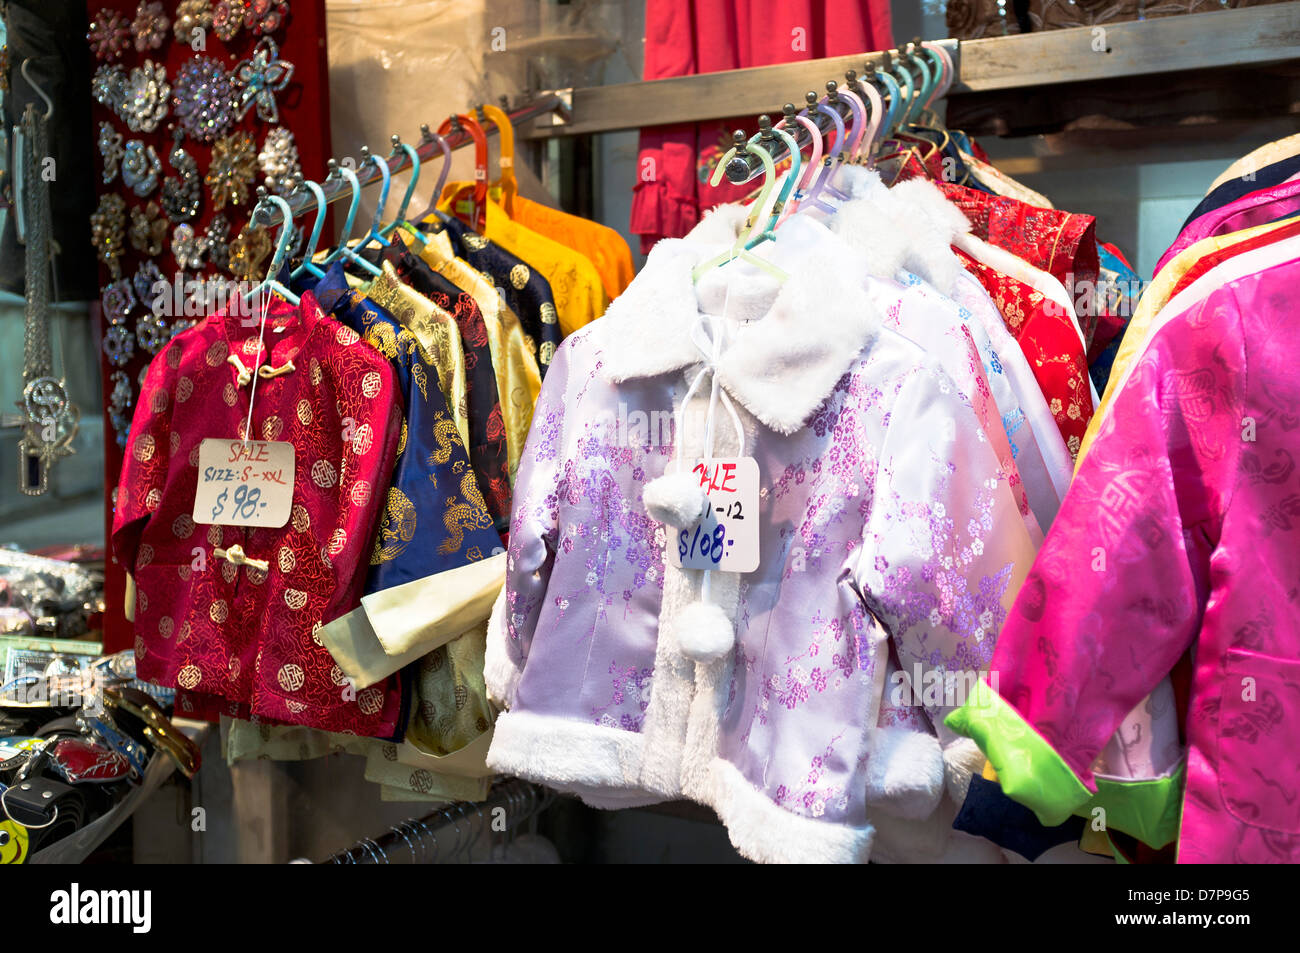 dh Jardines bazaar CAUSEWAY BAY HONG KONG tradizionale cinese giacche di seta per bambini Street market stalla cina tradizione vestiti bambini vestire bambini Foto Stock